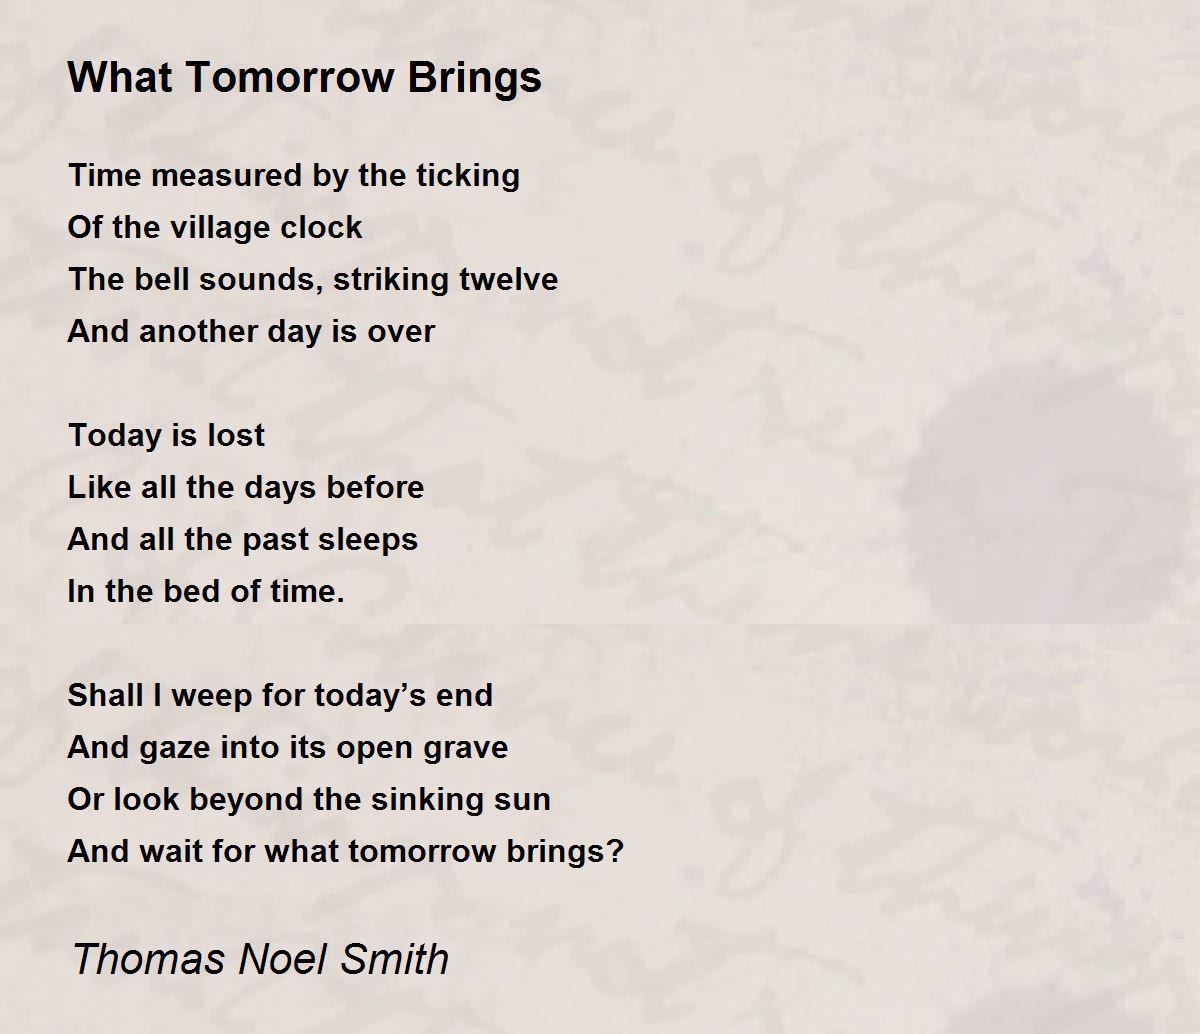 What Tomorrow Brings - What Tomorrow Brings Poem by Thomas Noel Smith